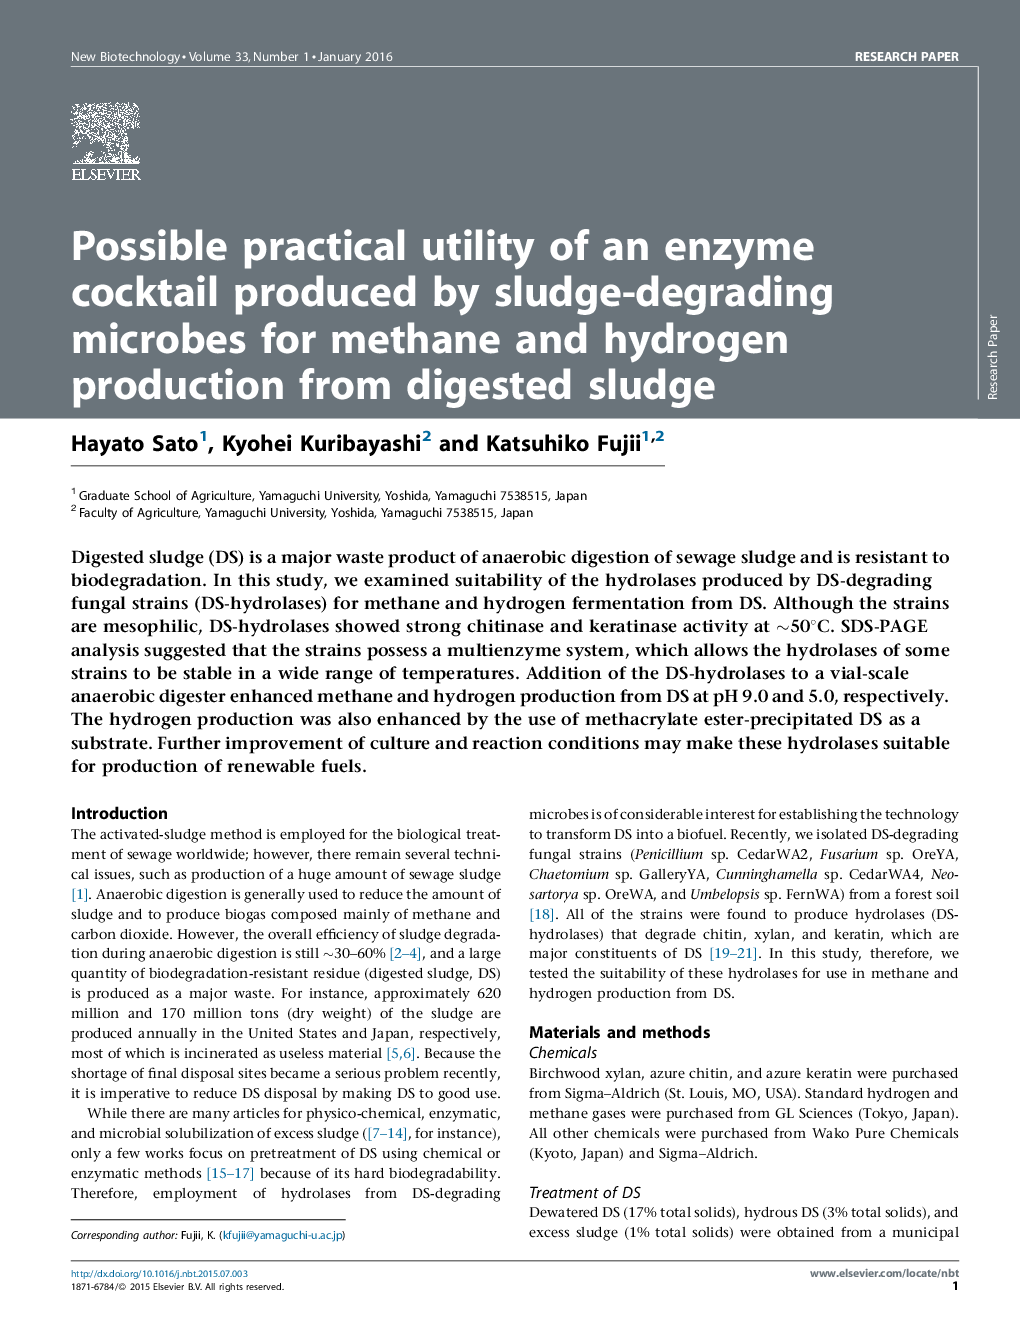 امکان استفاده عملی از کوکتل آنزیمی تولید شده توسط میکروب های تجزیه کننده لجن برای تولید متان و هیدروژن از لجن هضم شده